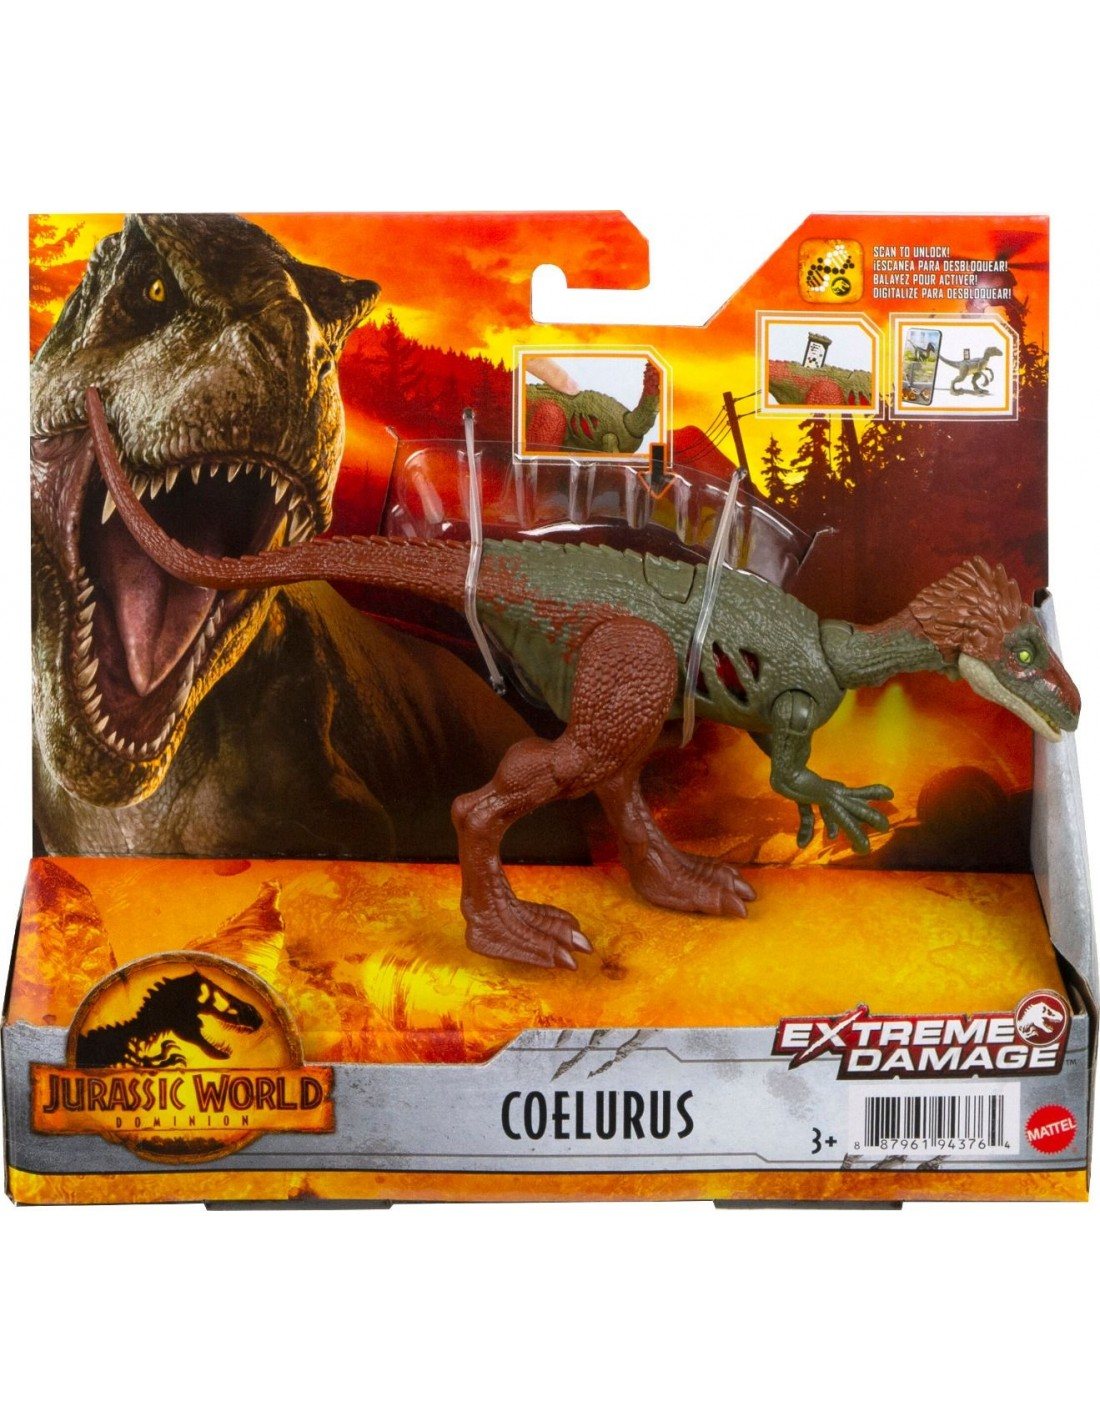 Jurassic World COELURUS EXTREME DAMAGE MATTEL 